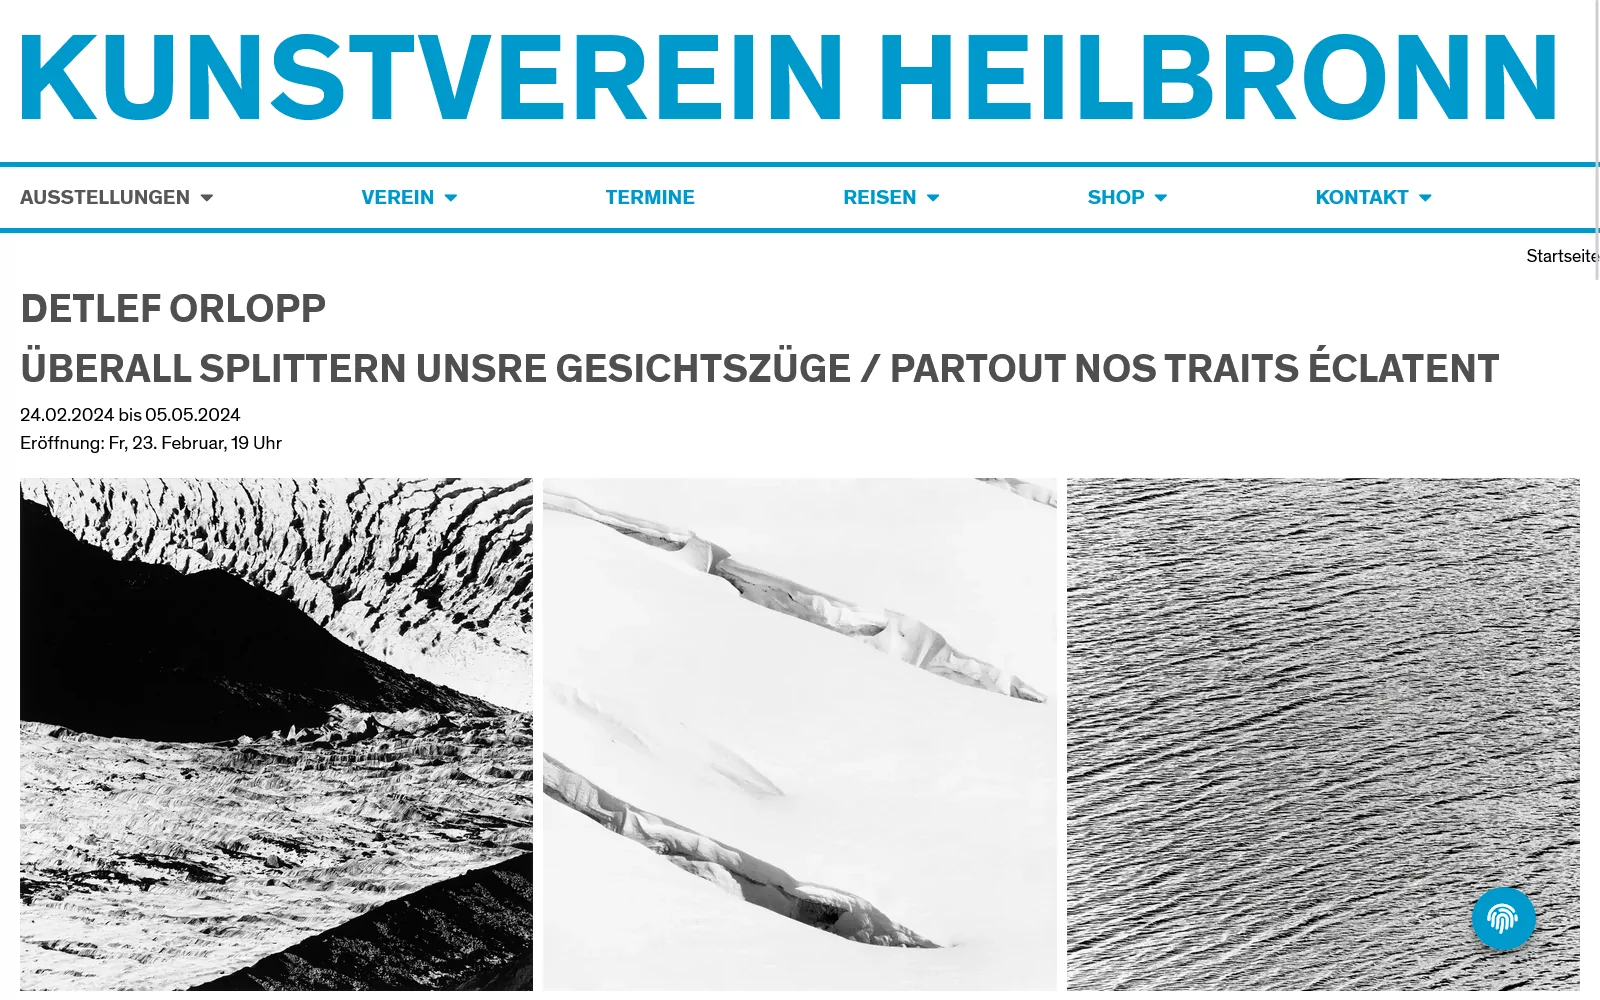 Desktopansicht der Startseite von kunstverein-heilbronn.de